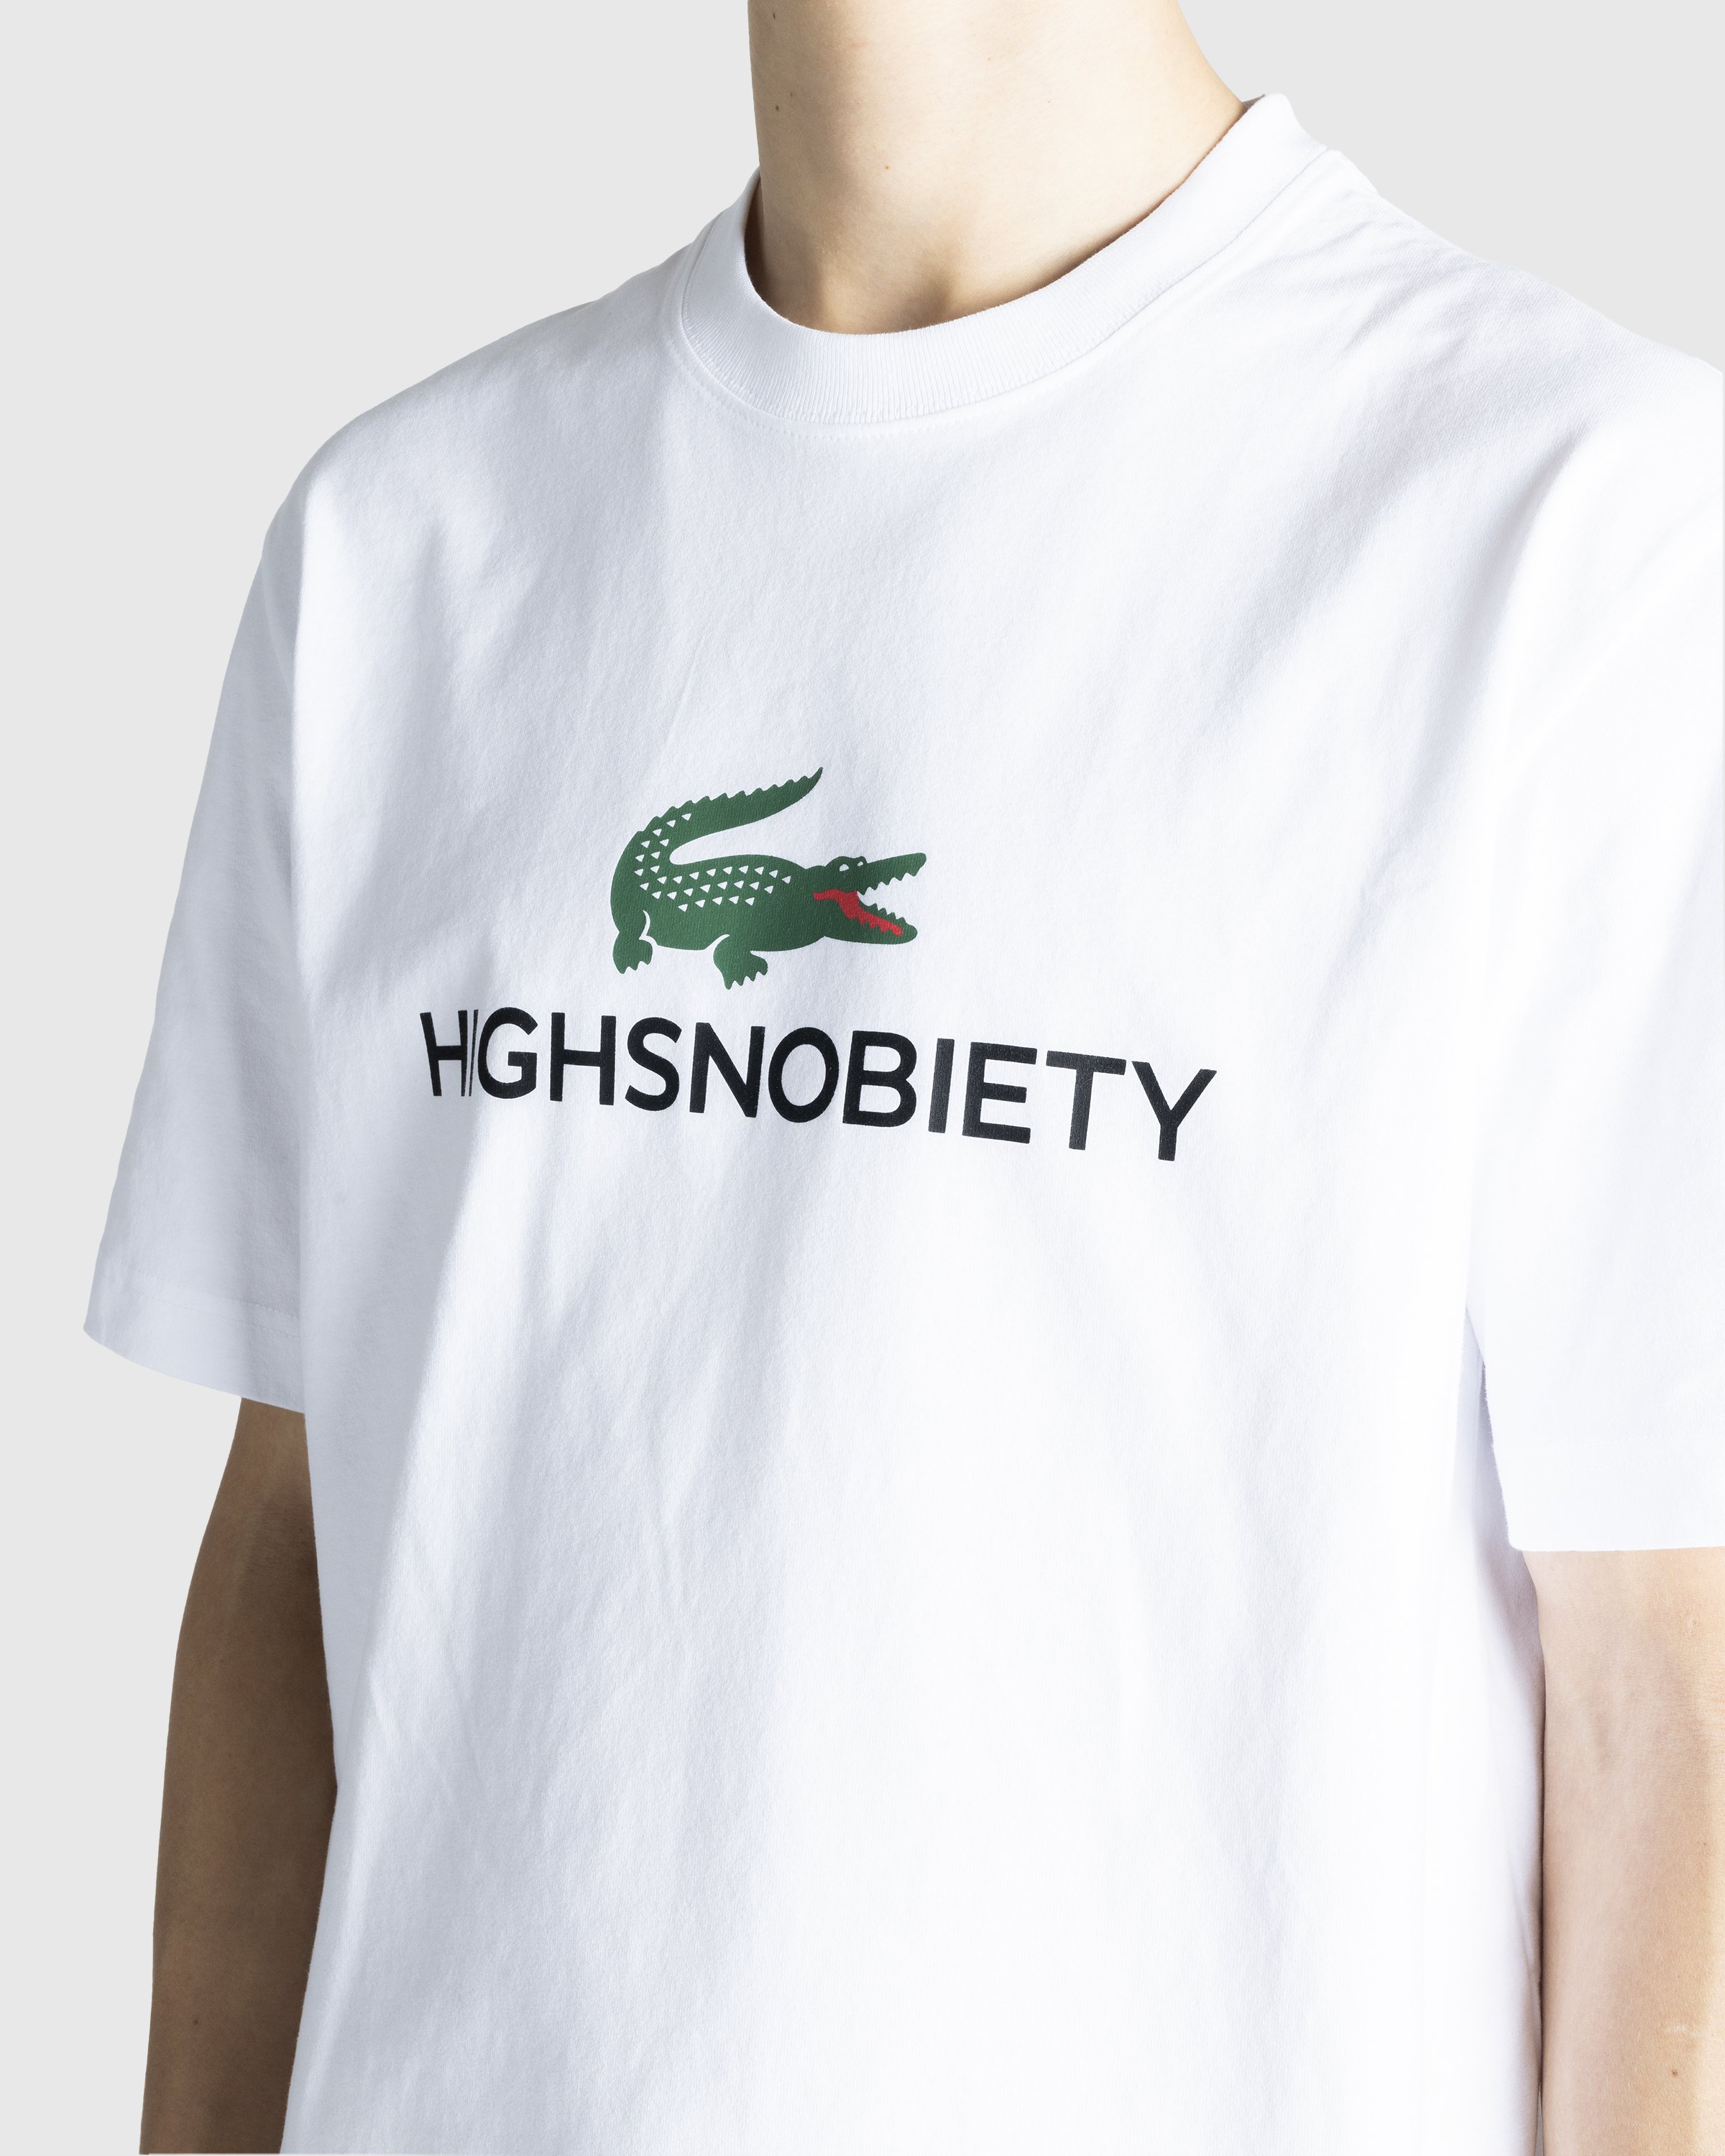 Lacoste x Highsnobiety - White T-Shirt - Clothing - White - Image 2